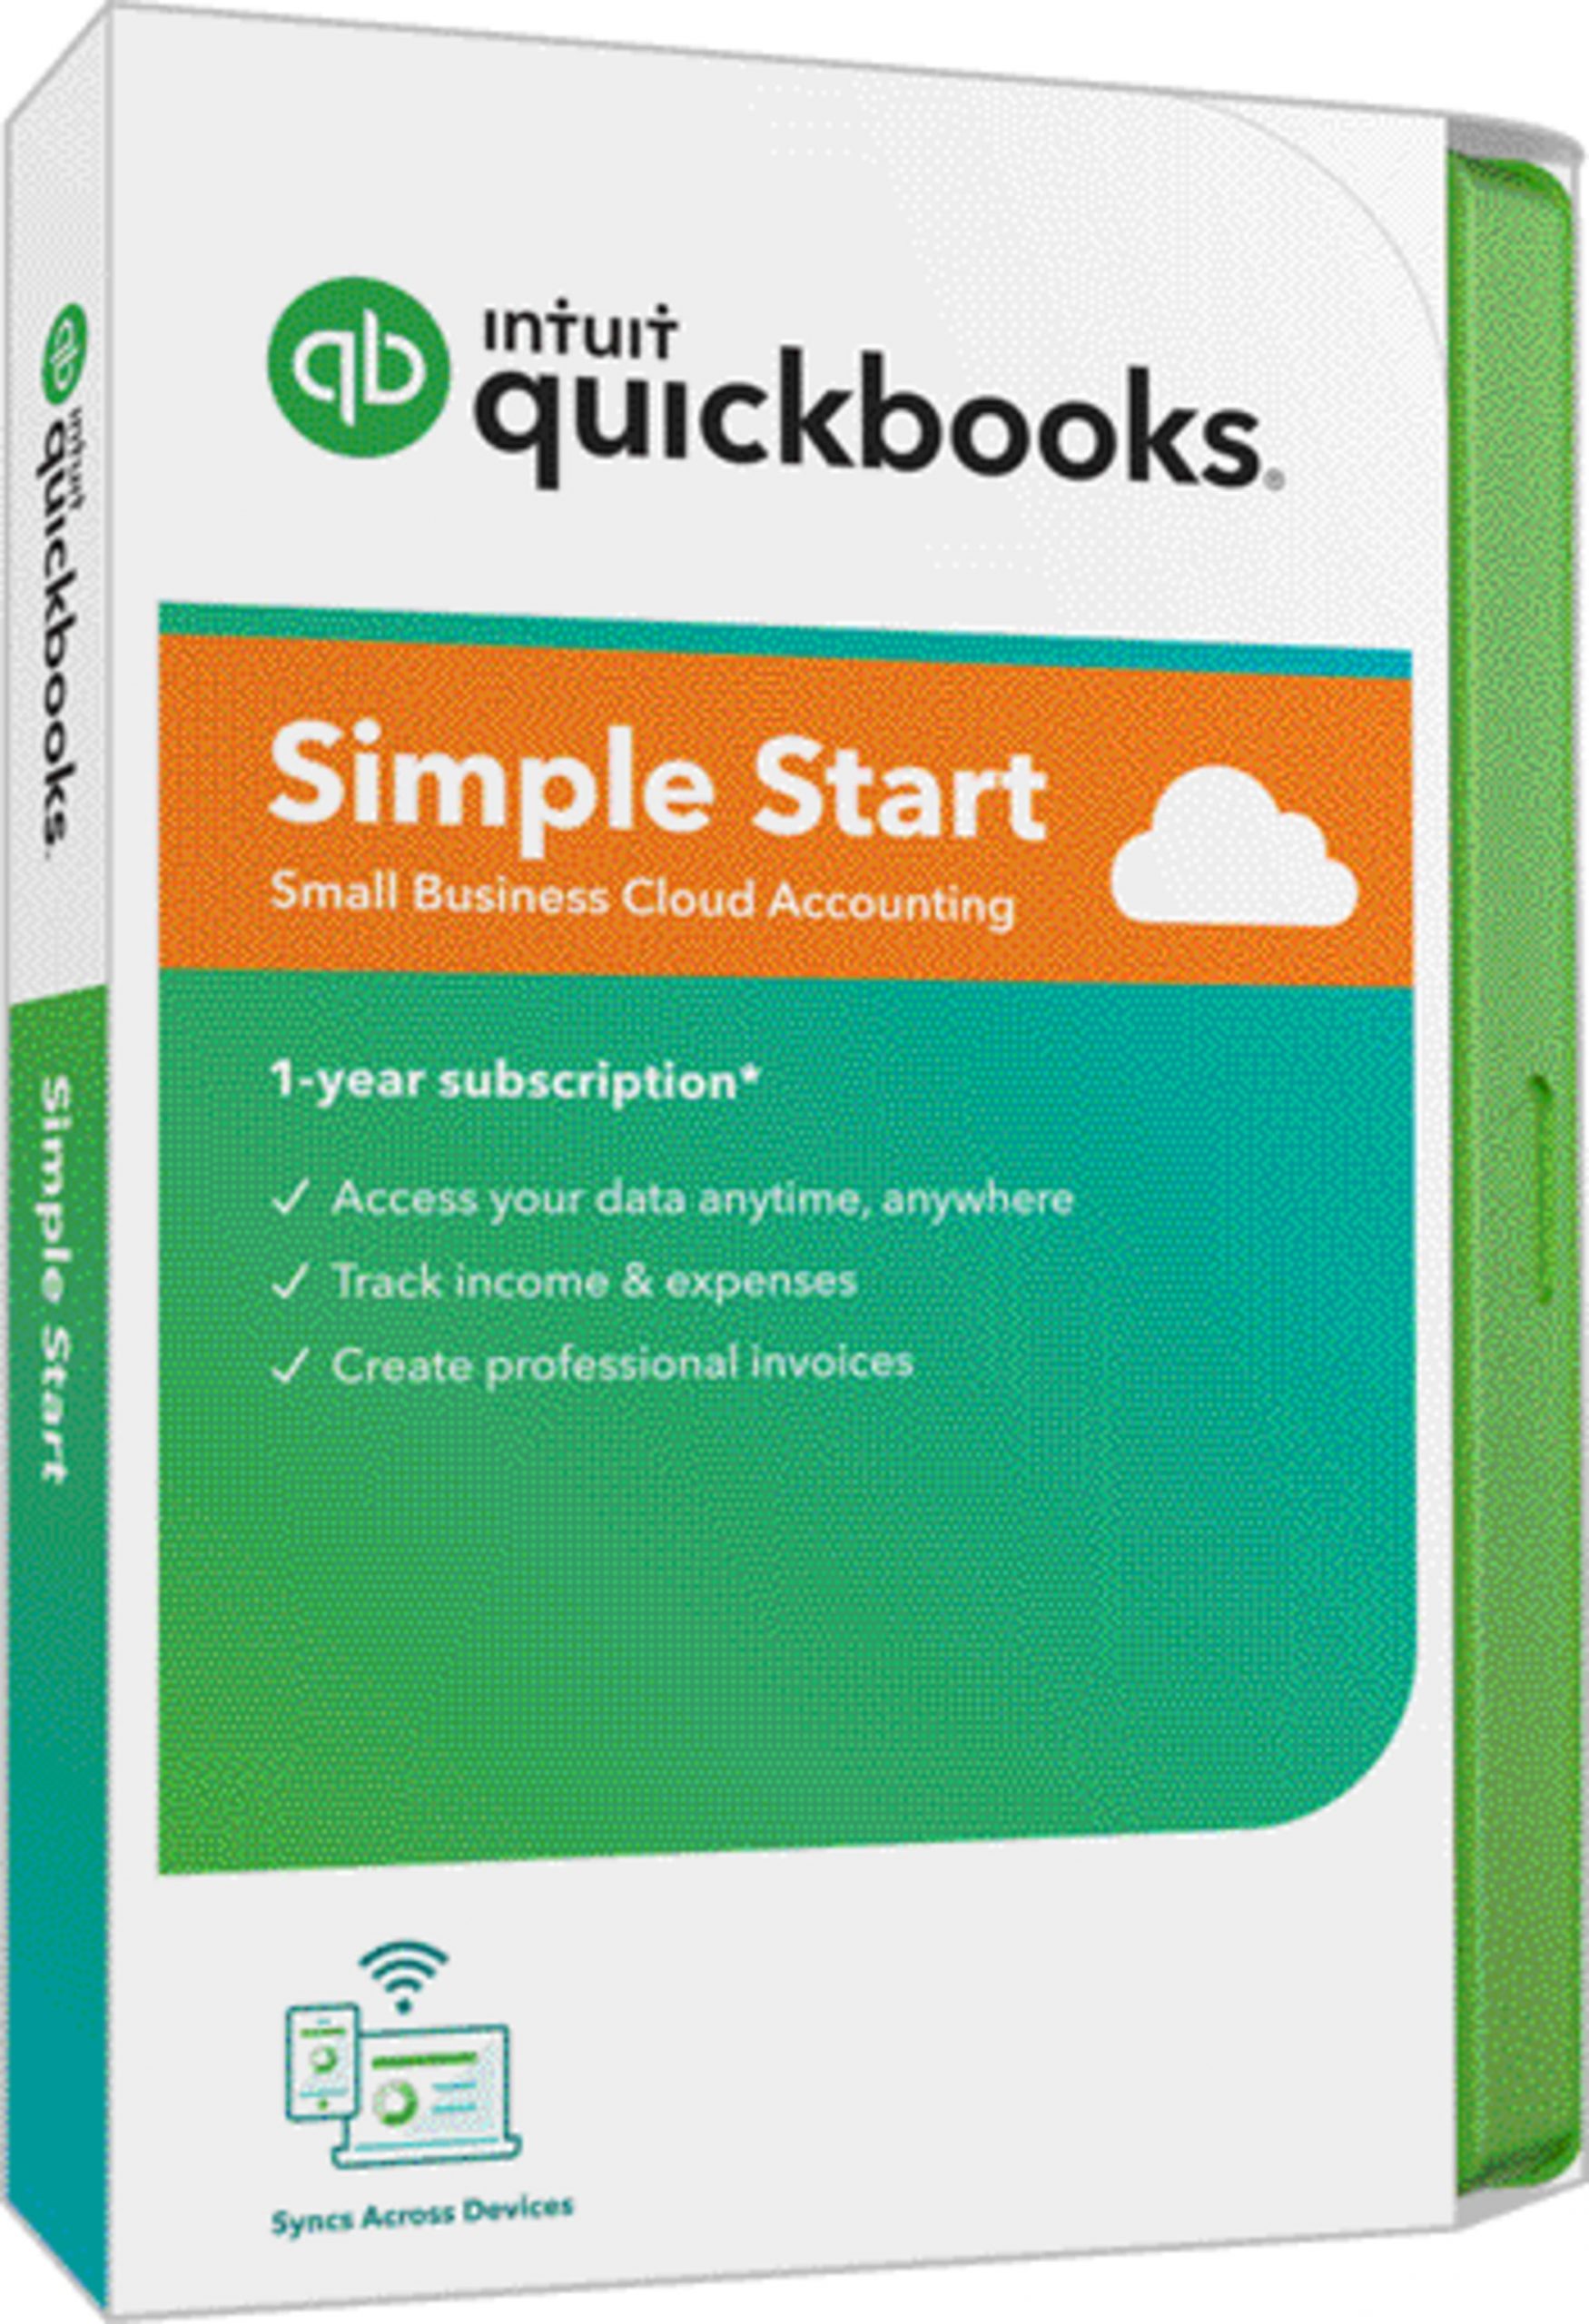 quickbooks tutorial videos free